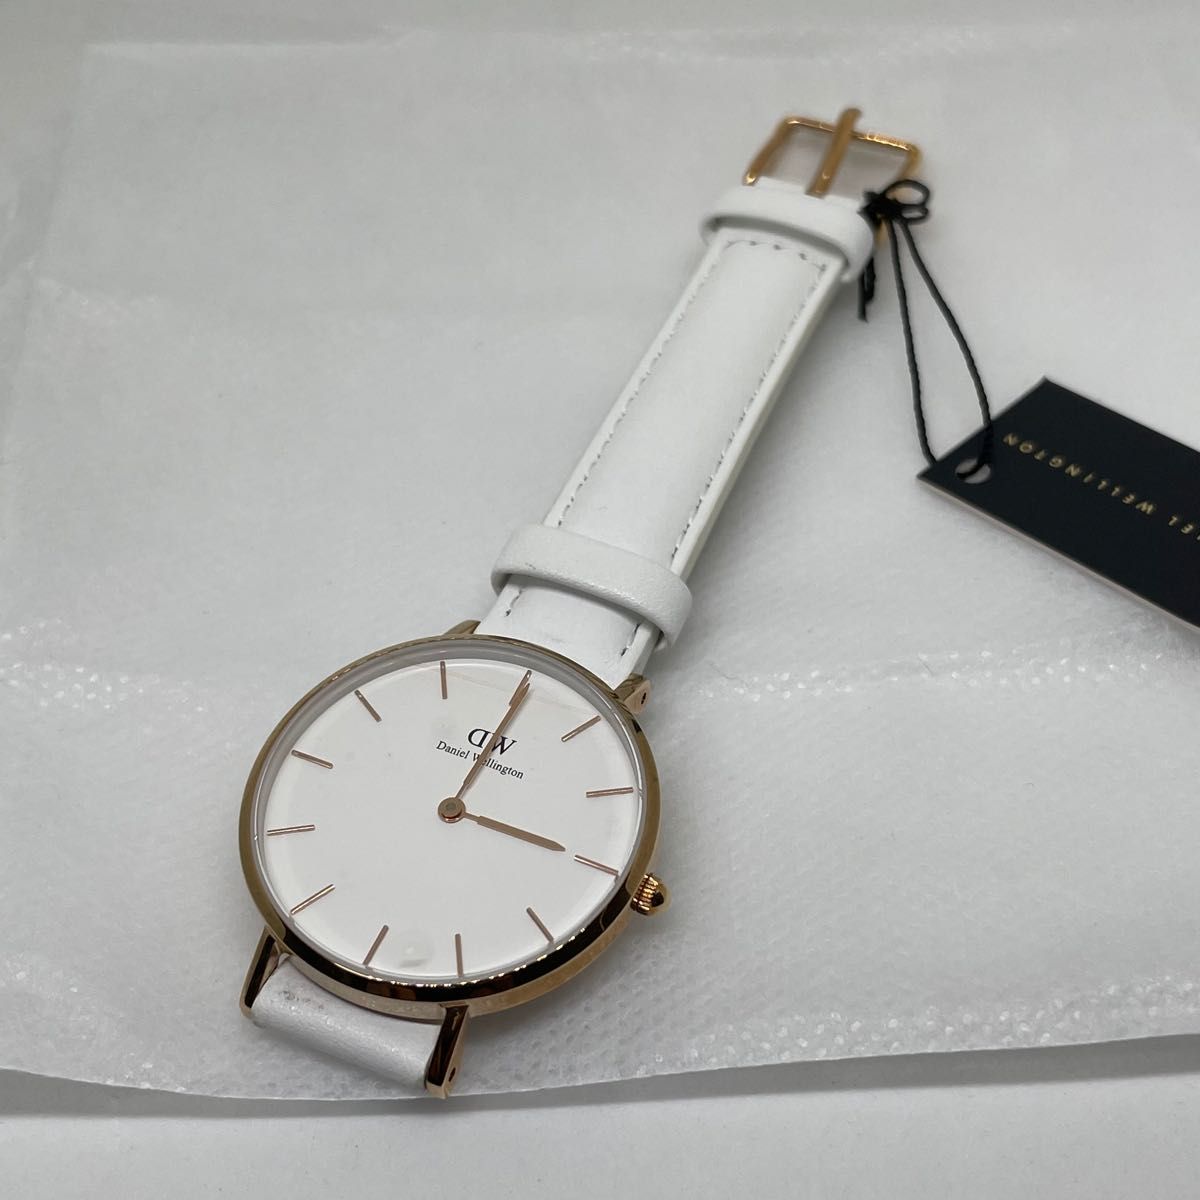 ご注意ください ダニエルウェリントン 腕時計 新品未使用 箱付き ×2 通販